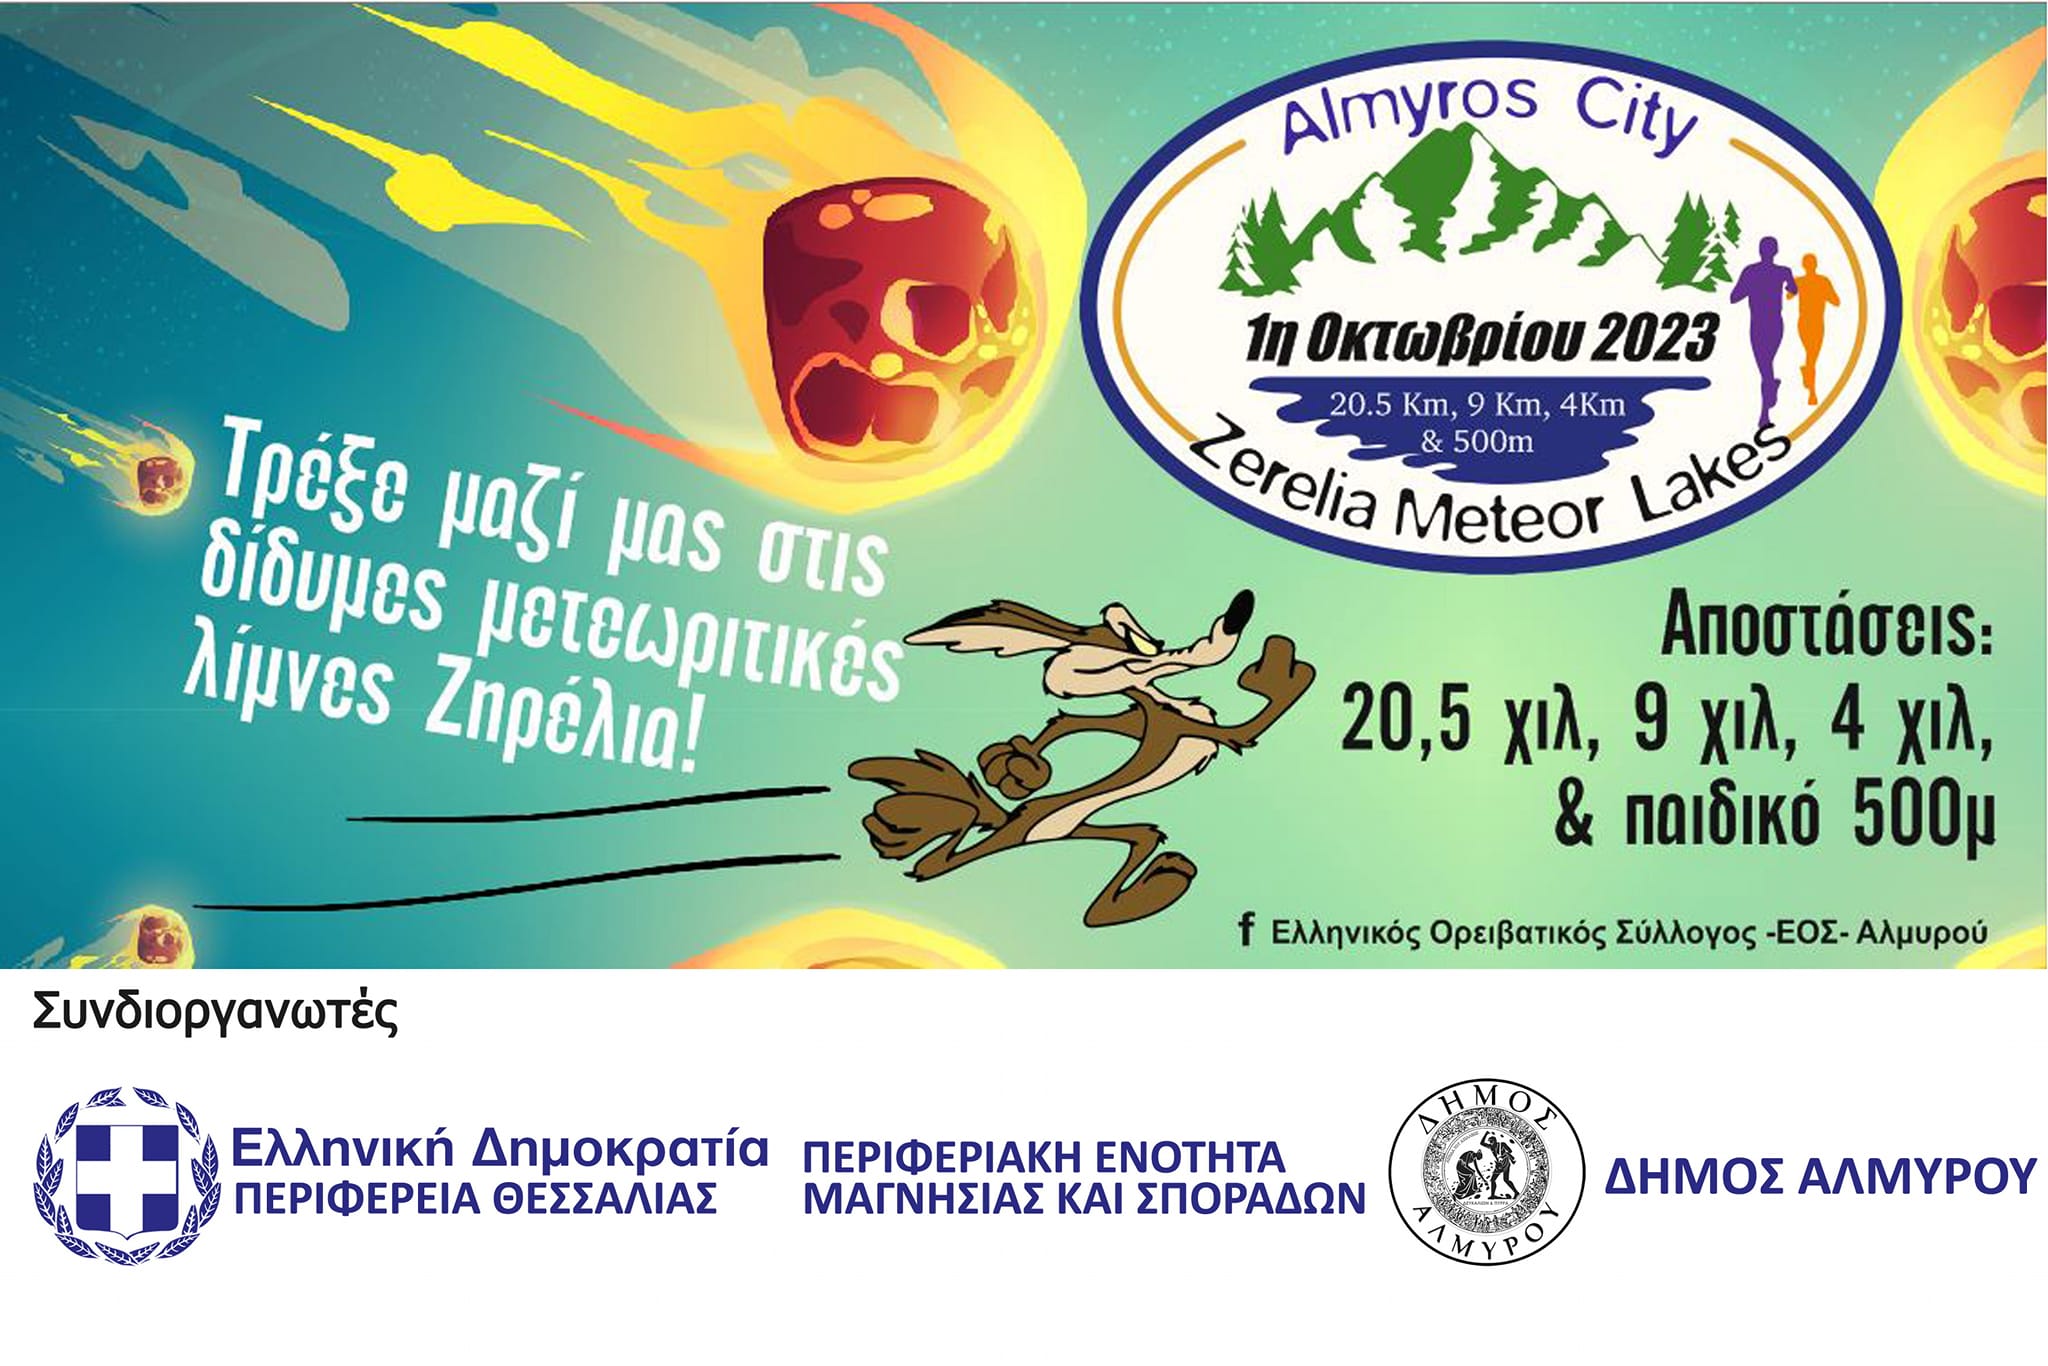 Την 1η Οκτωβρίου ο 7ος αγώνας δρόμου «Almyros City-Zerelia Meteor Lakes»